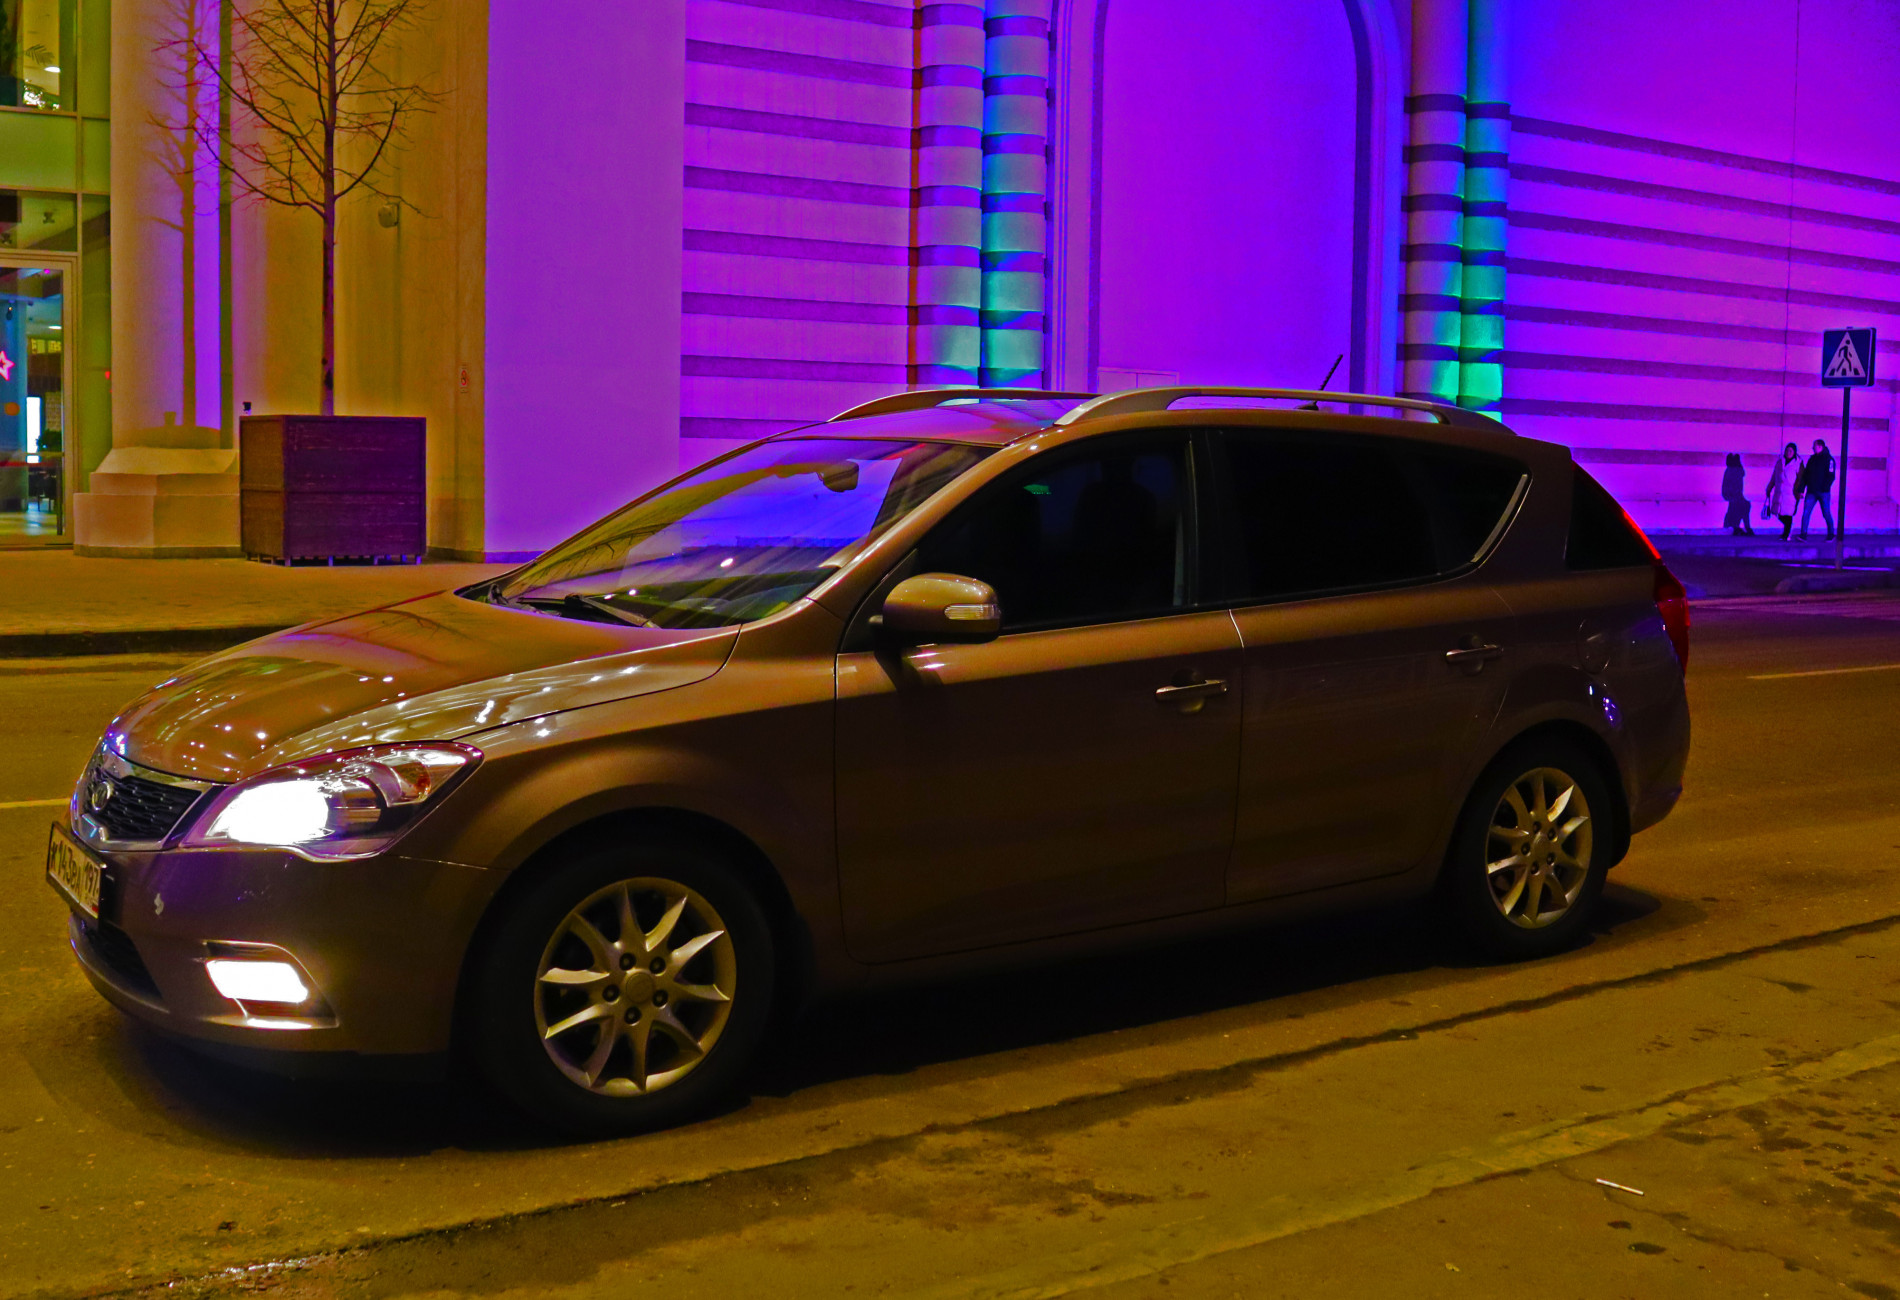 Аренда kia ceed эконом класса 2010 года в городе Москва Аннино от 1600 руб./сутки, передний привод, двигатель: бензин, объем 1.6 литров, ОСАГО (Мультидрайв), без водителя, недорого, вид 4 - RentRide